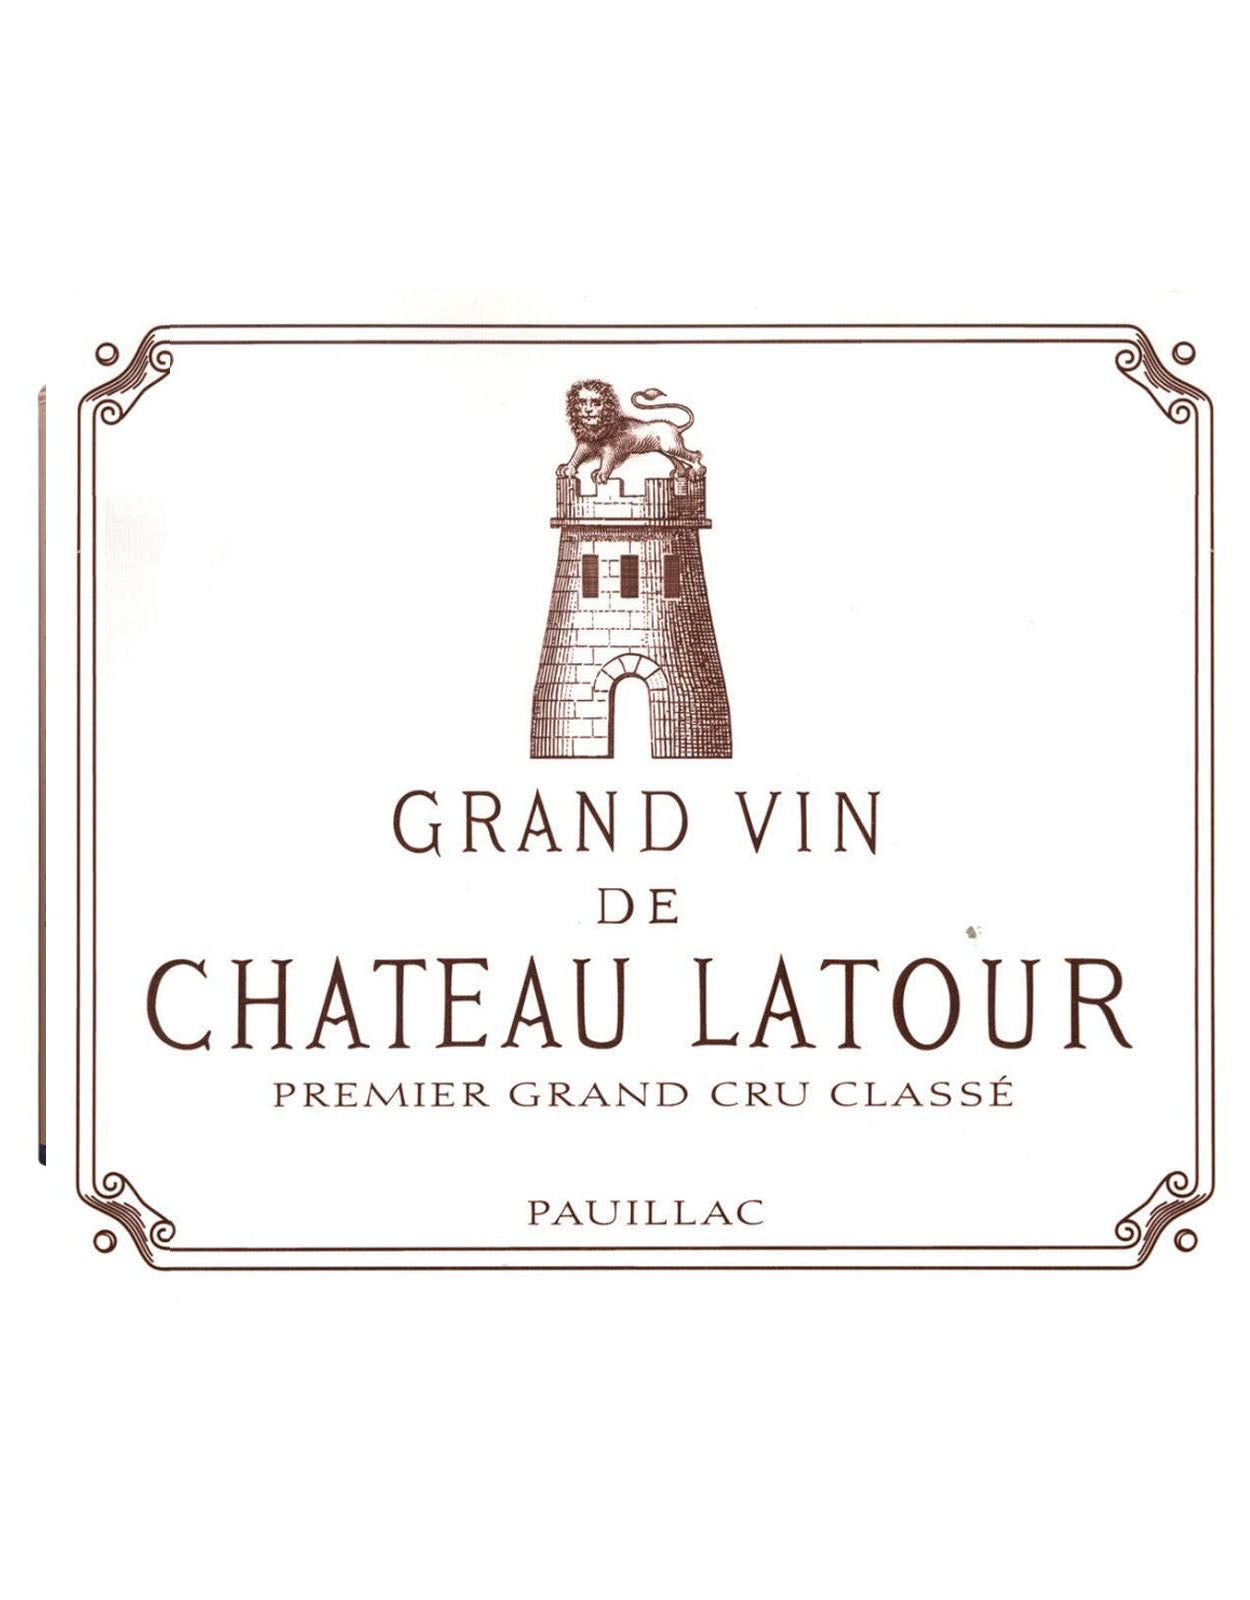 Chateau Latour 2010 - 1.5 Litre Bottle